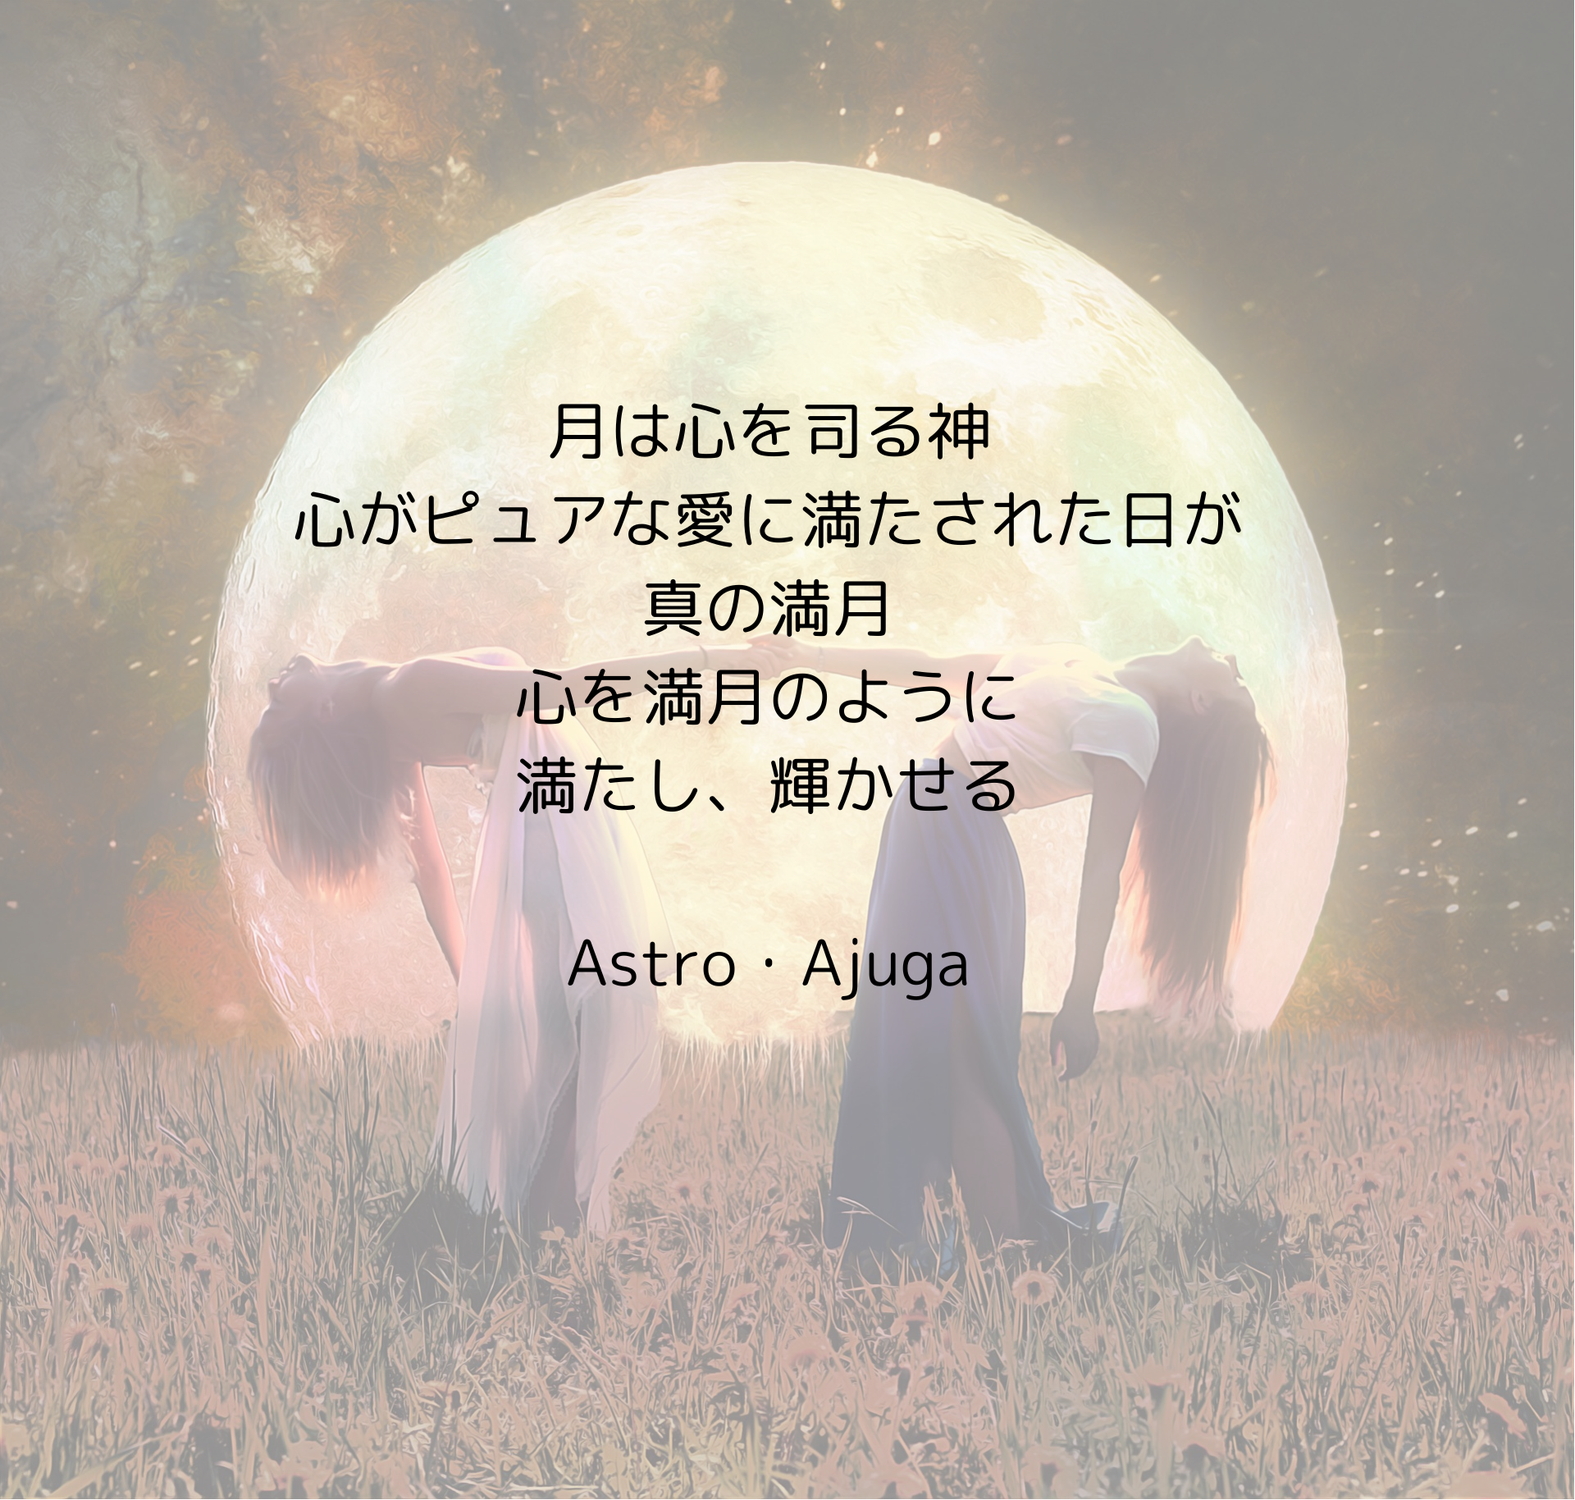 『牡牛座満月』10月29日「アジュガの星のコトバ」